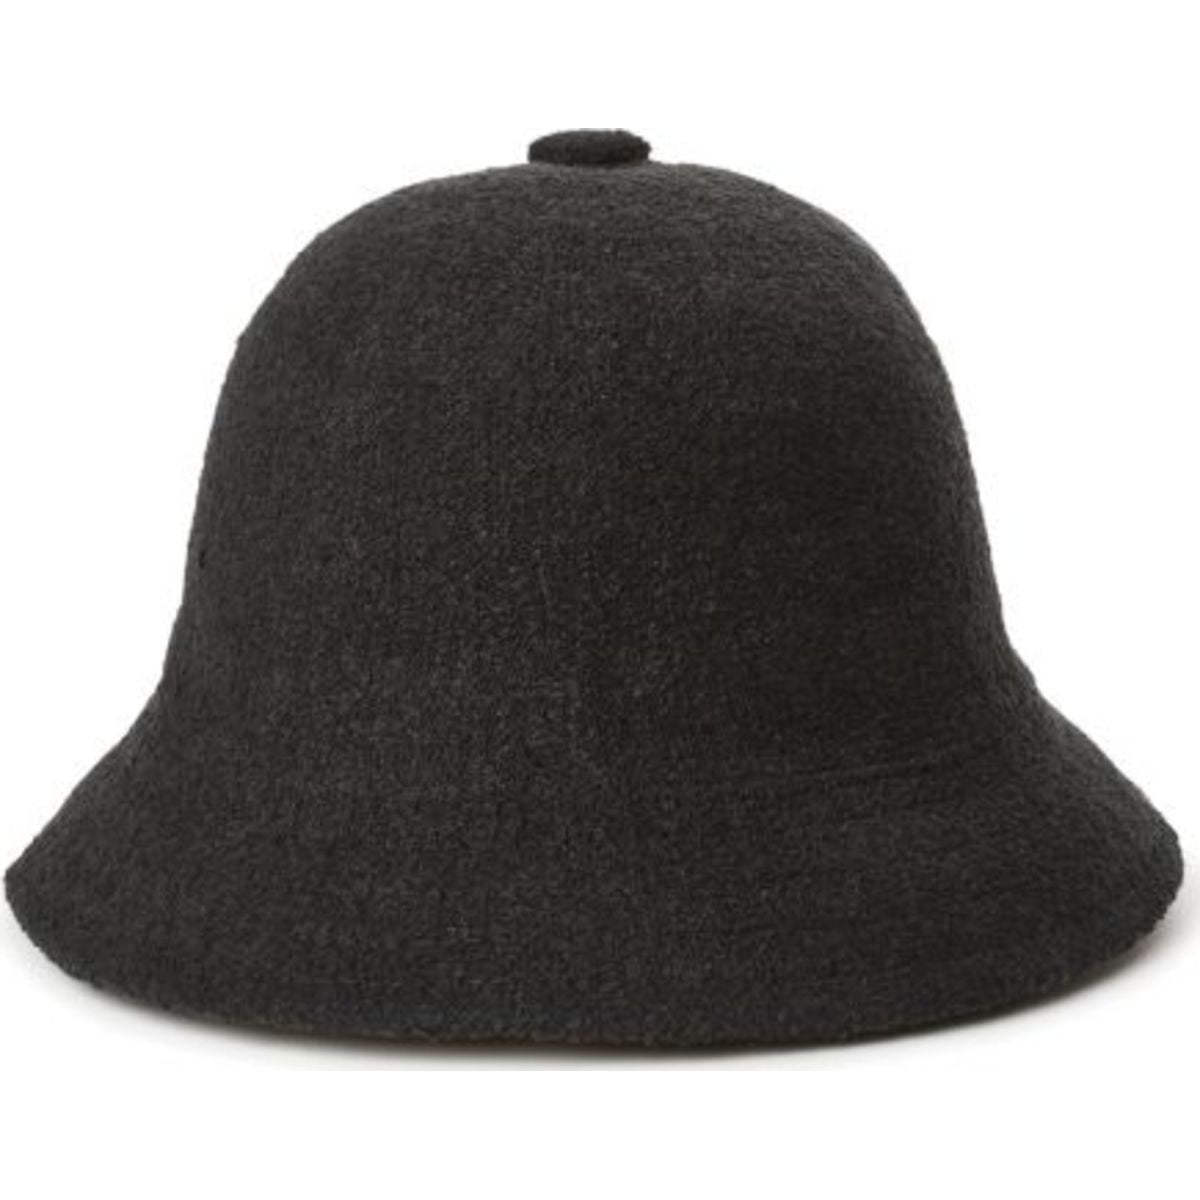 Essex III Bucket Hat - Black